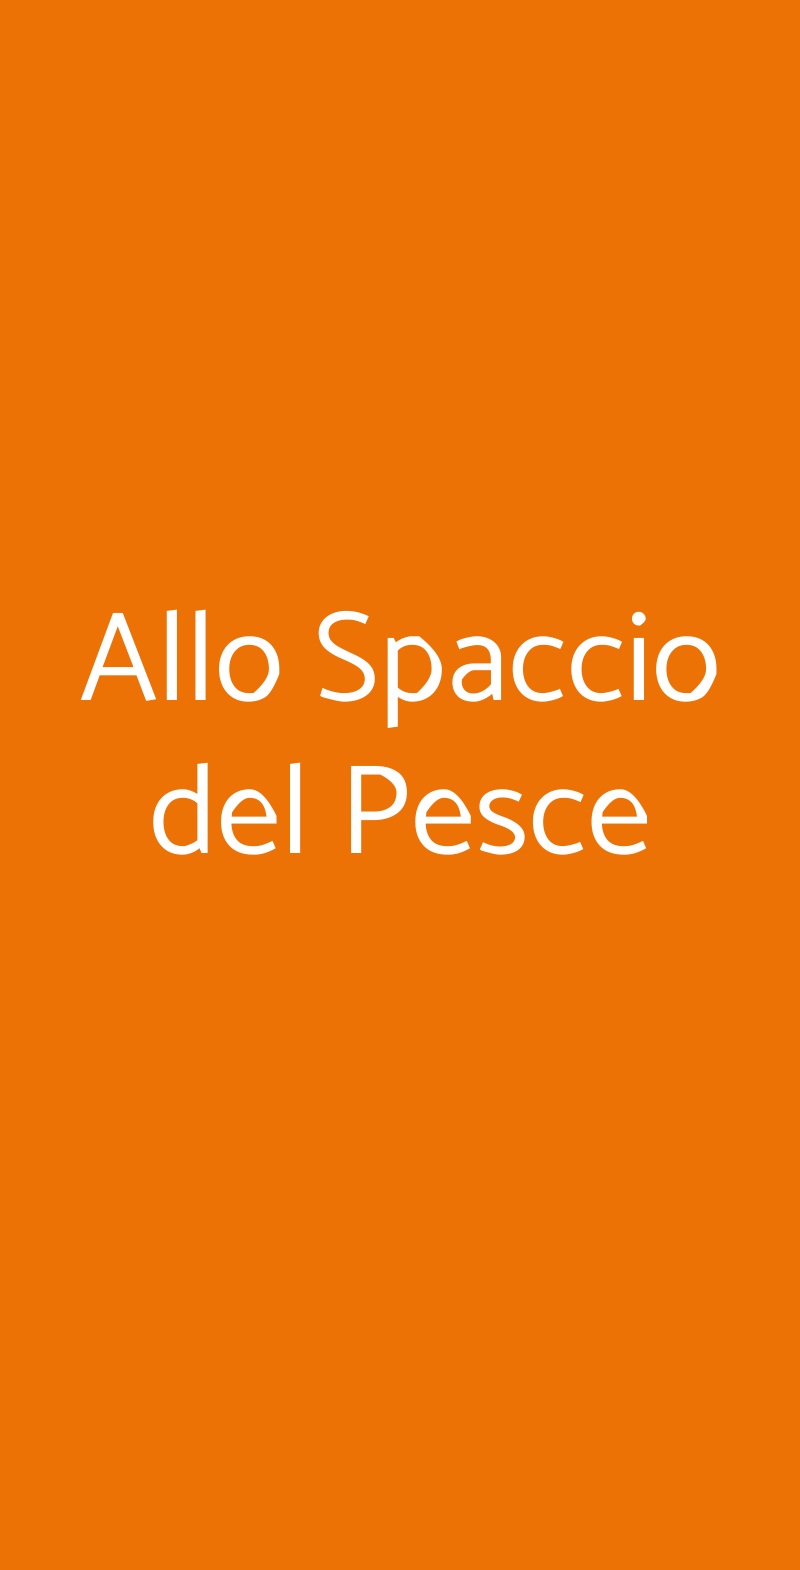 Allo Spaccio del Pesce Milano menù 1 pagina